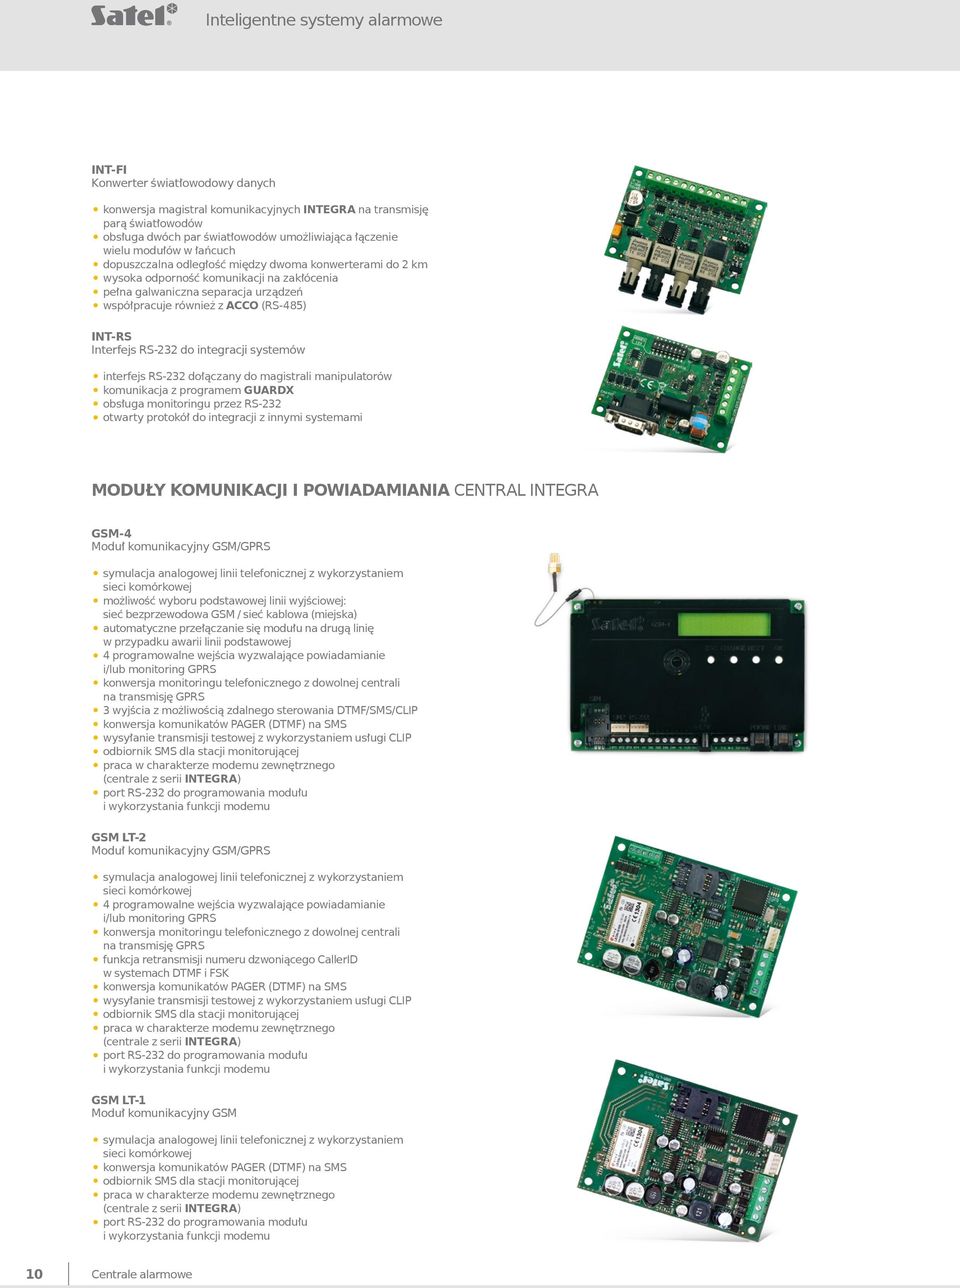 INT-RS Interfejs RS-232 do integracji systemów interfejs RS-232 dołączany do magistrali manipulatorów komunikacja z programem GUARDX obsługa monitoringu przez RS-232 otwarty protokół do integracji z